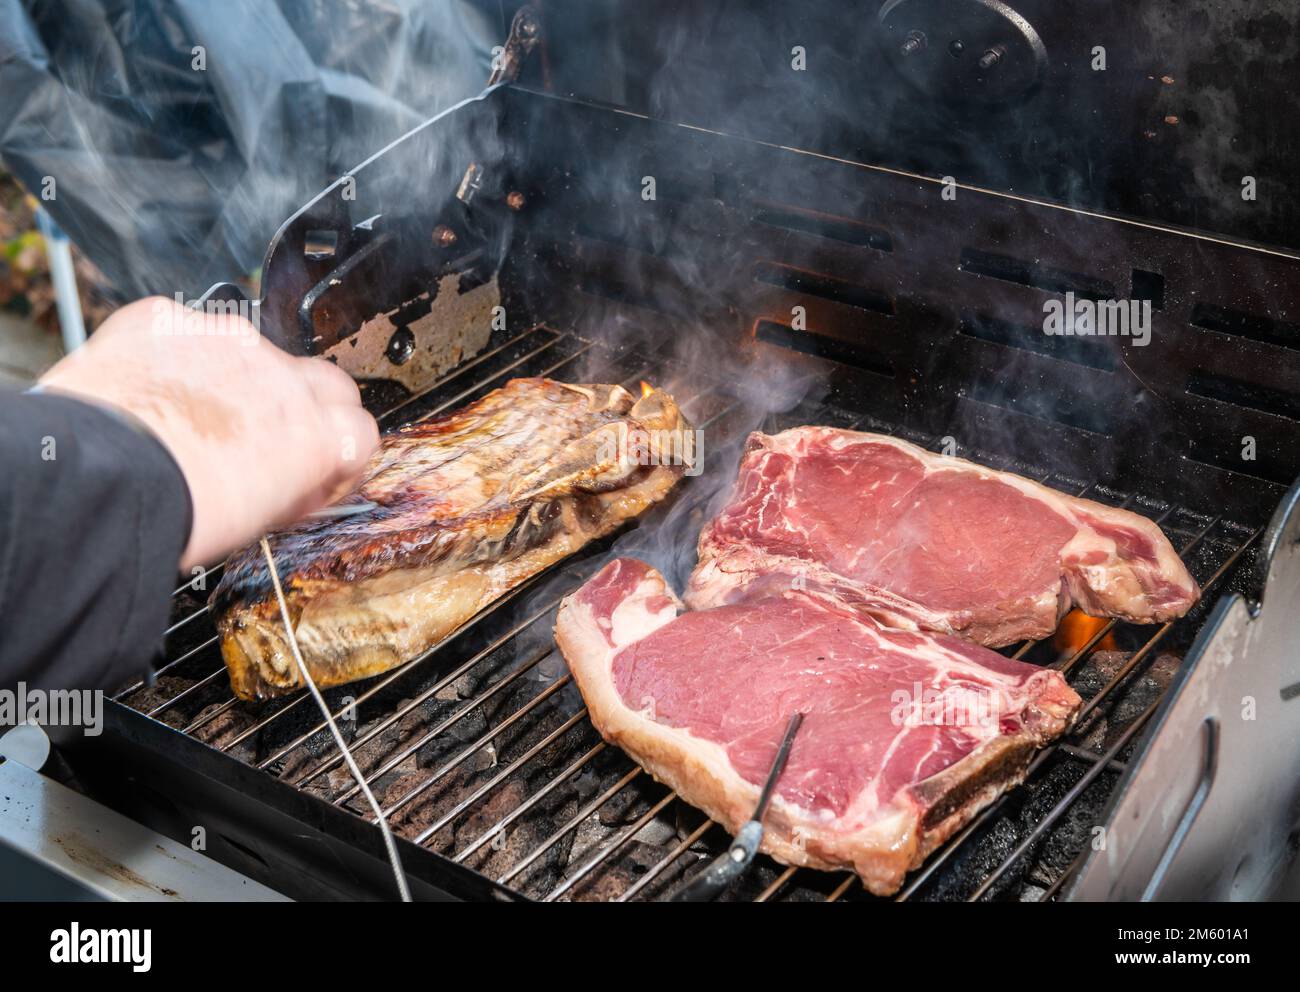 Steak de t-bone grillé (steak de bœuf) sur un barbecue avec thermomètre à viande. Focus sélectif - Trentin-Haut-Adige, nord de l'Italie - Europe Banque D'Images